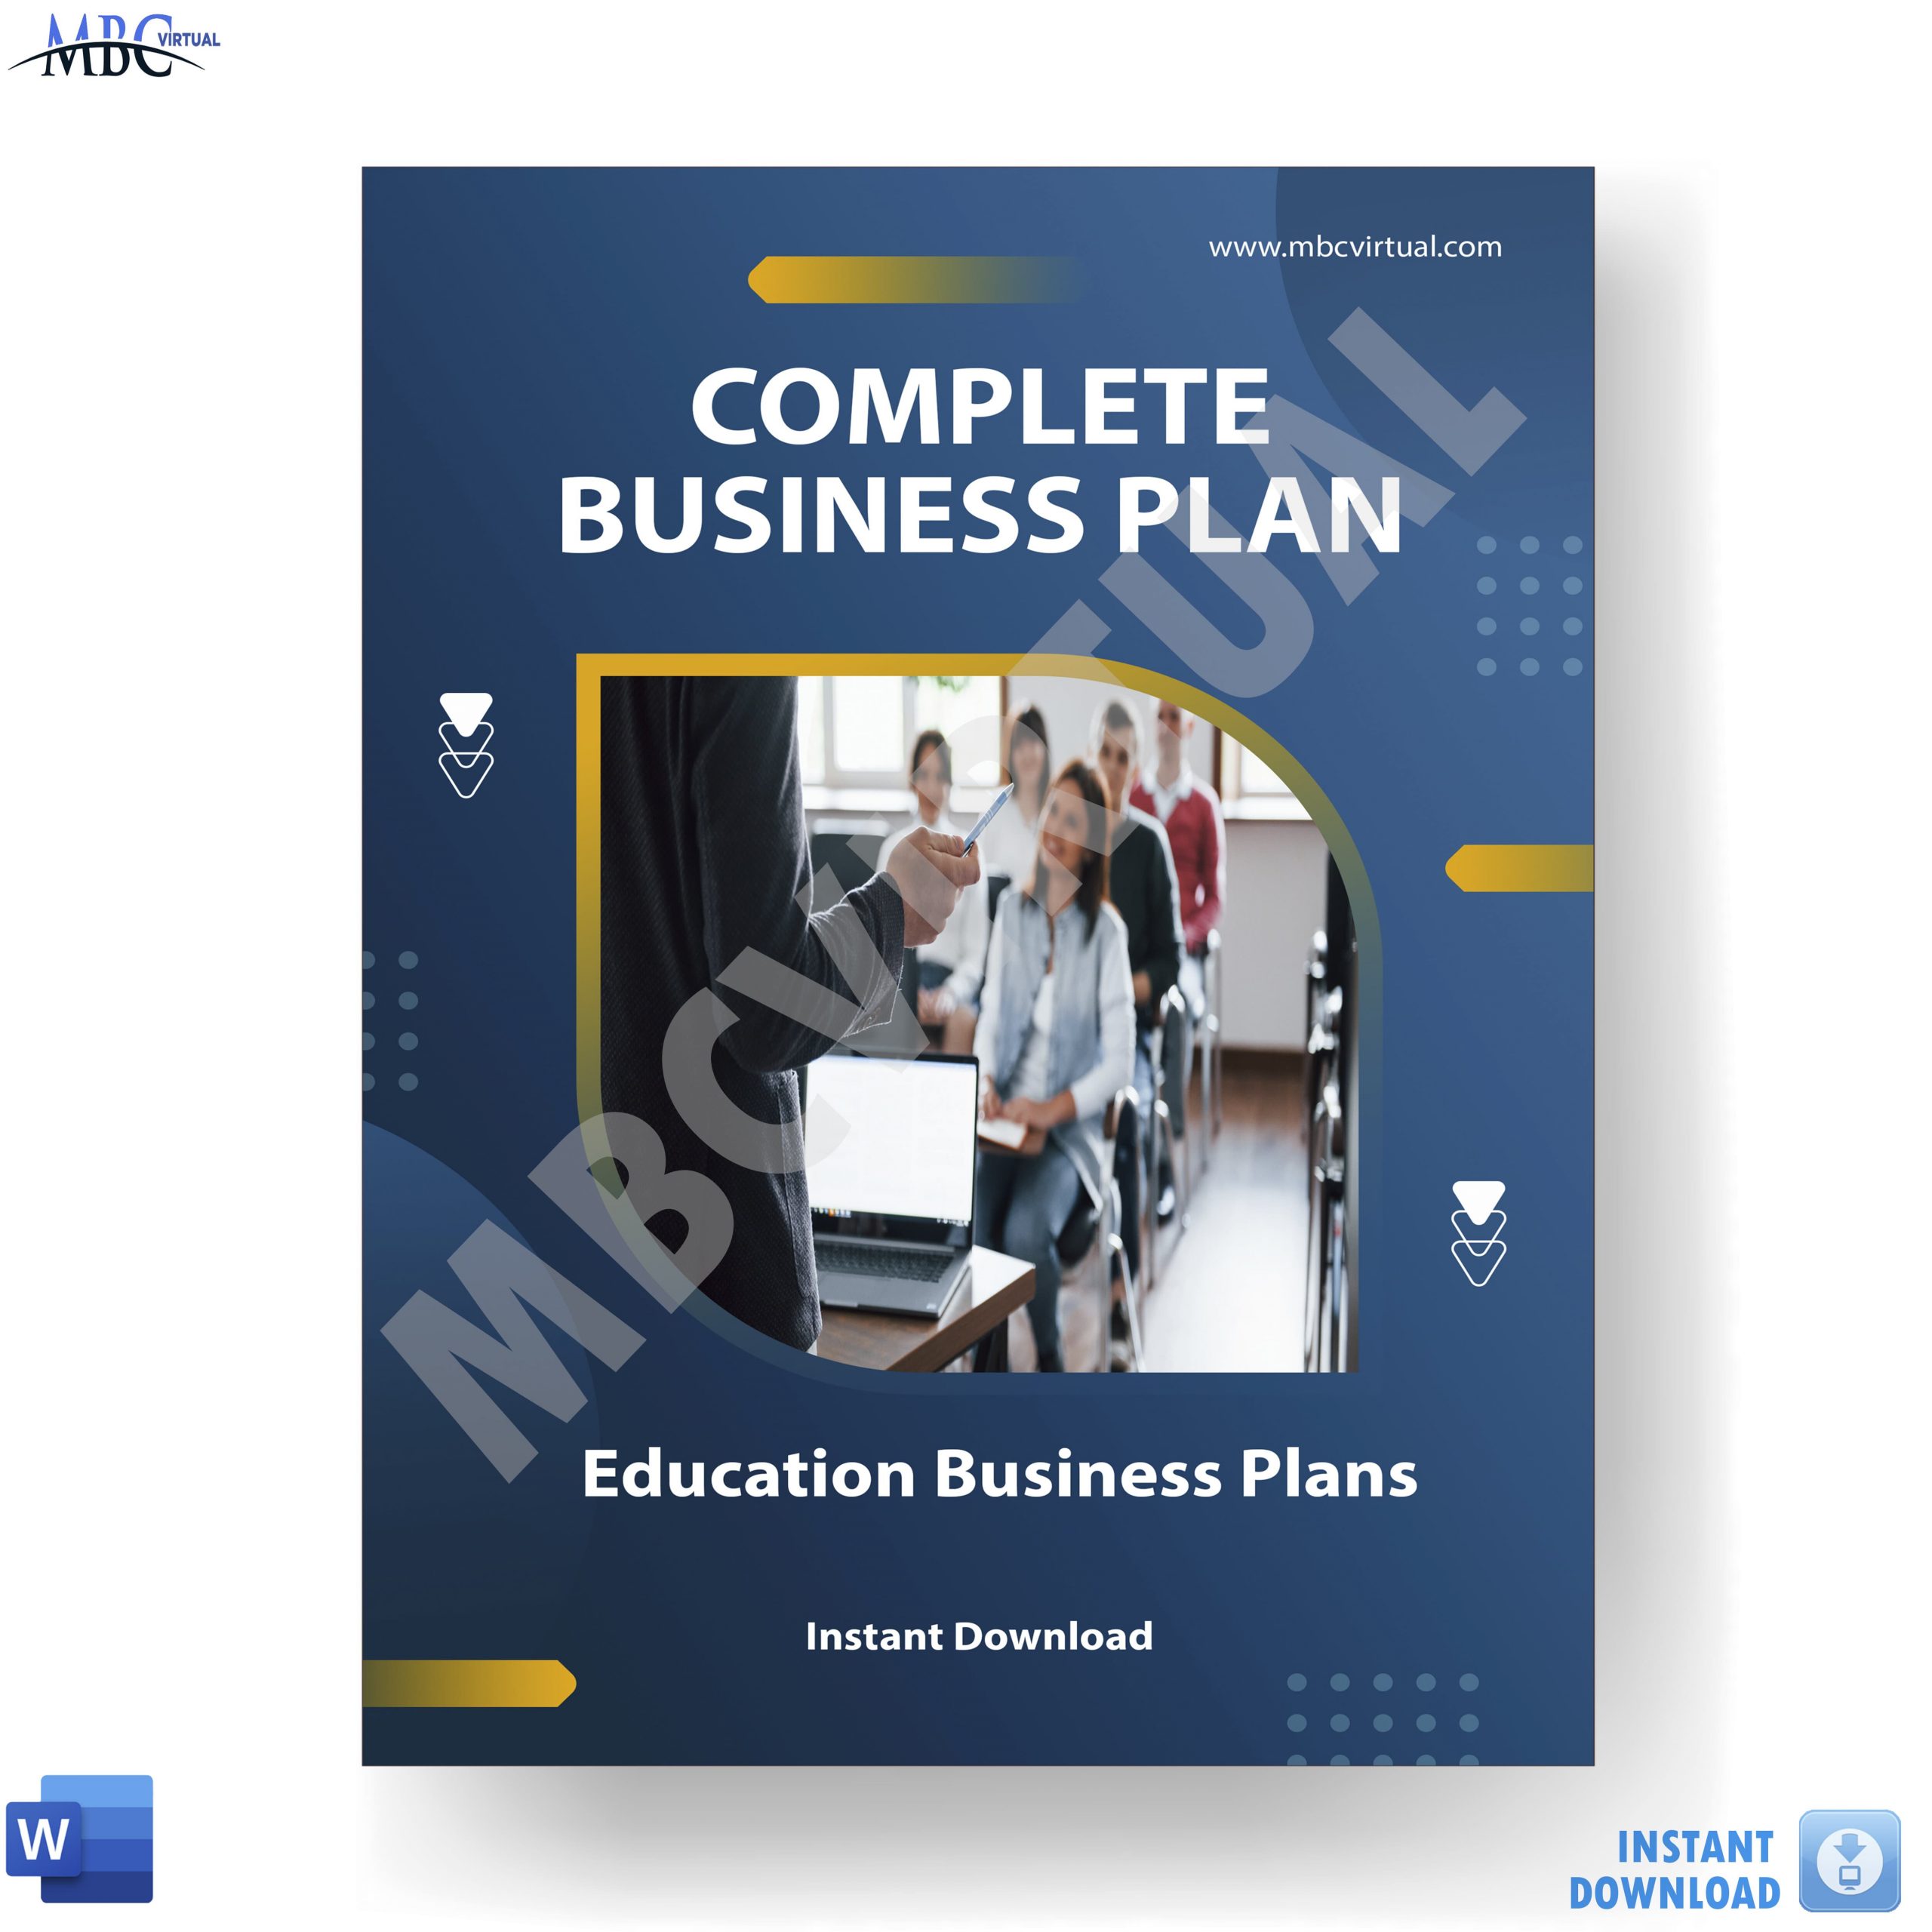 Education Business Plans